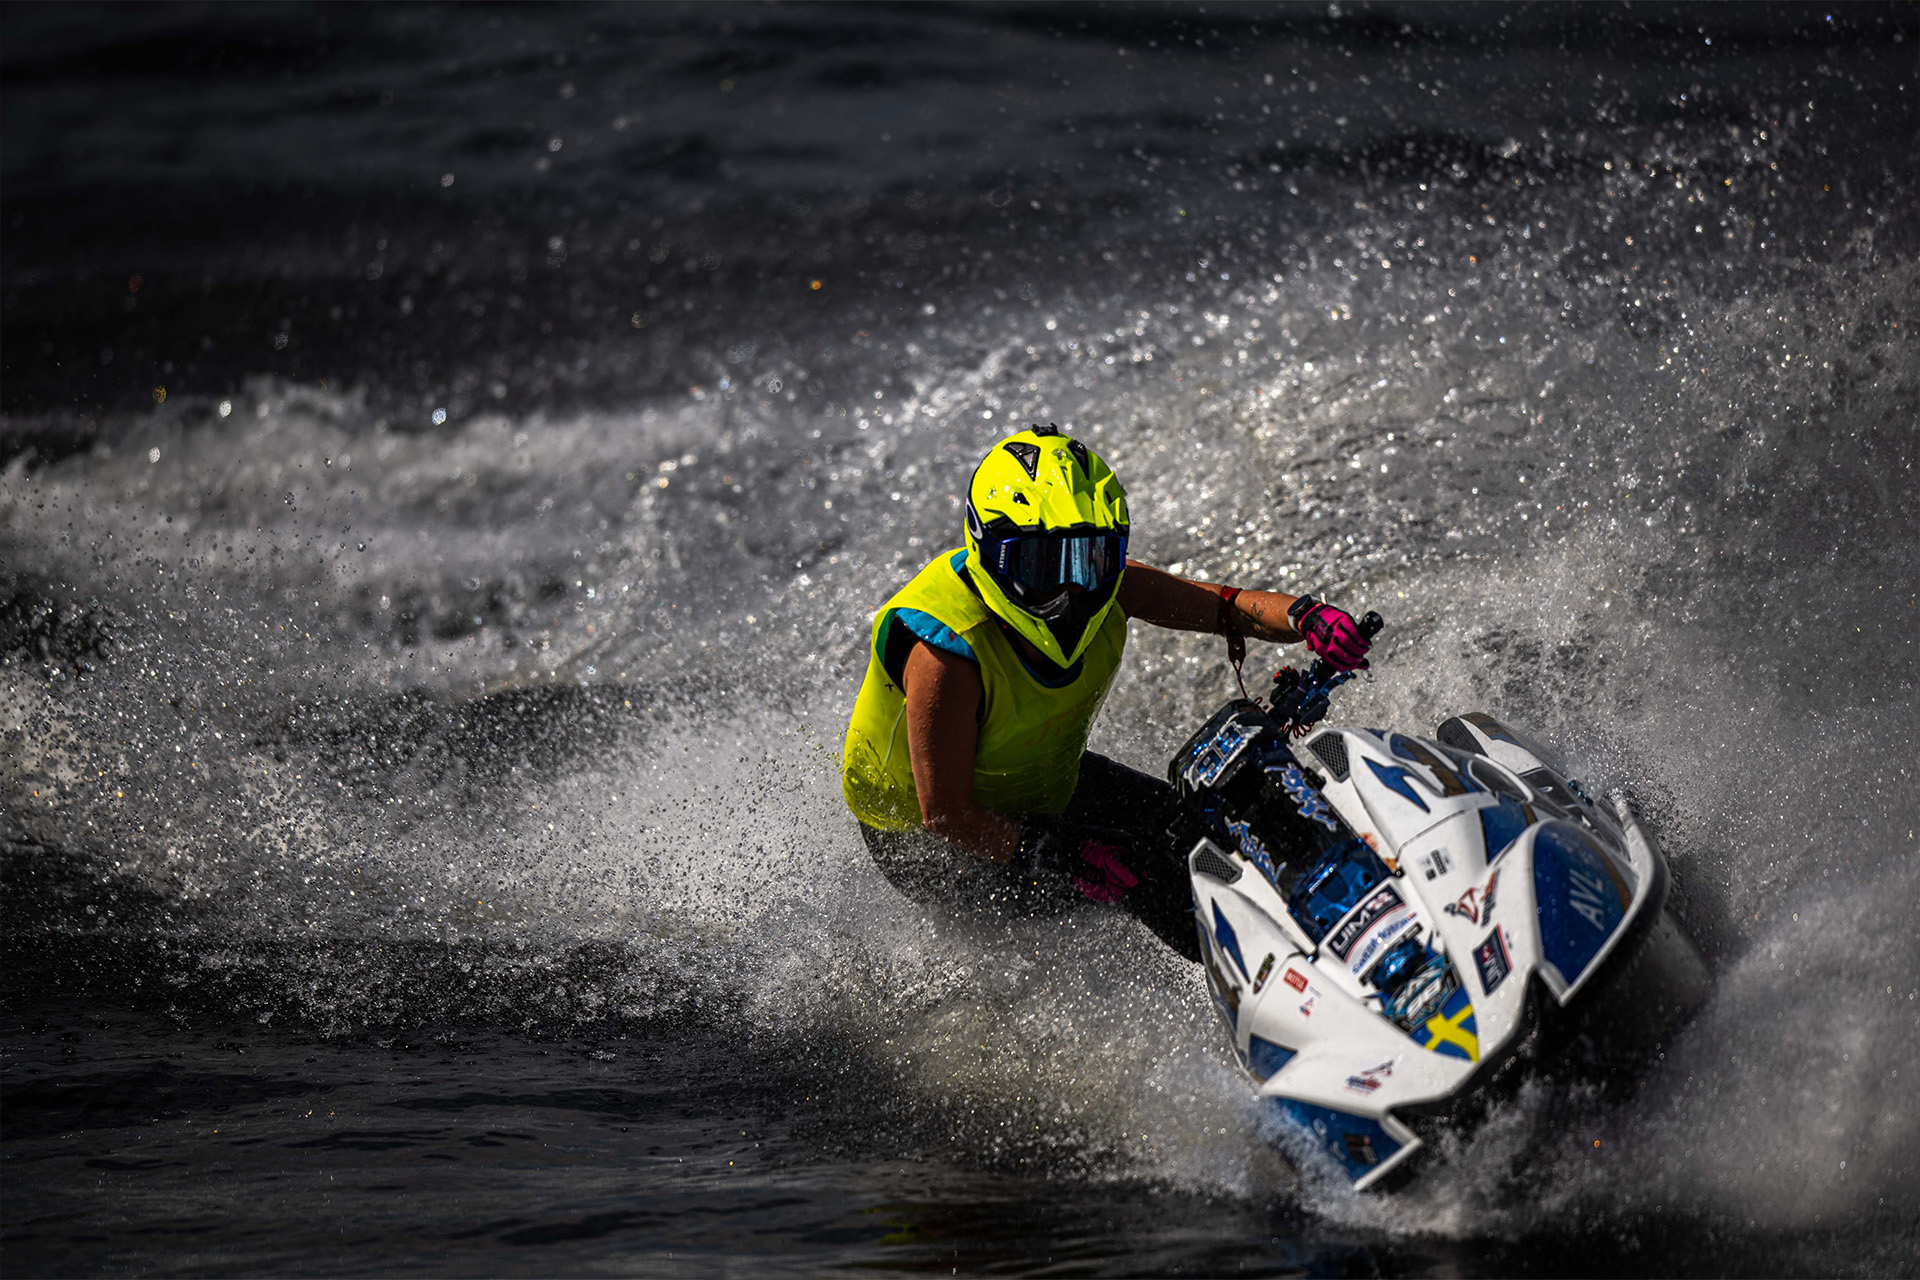 Aquabikeåkare in action. Foto: Maxim Thore, Bildbyrån